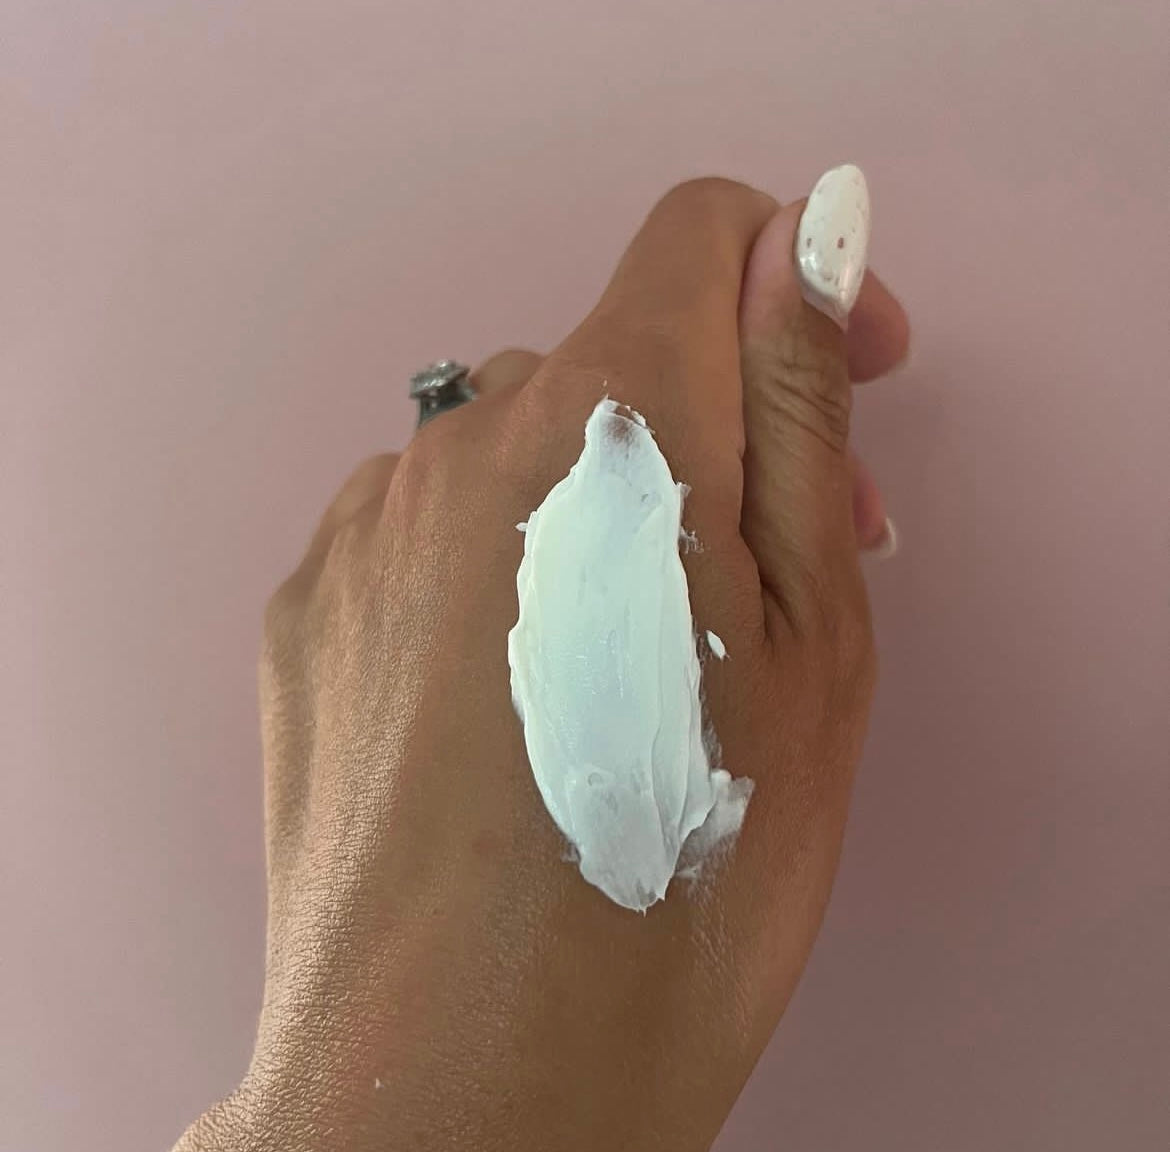 50g Hand and Body Cream